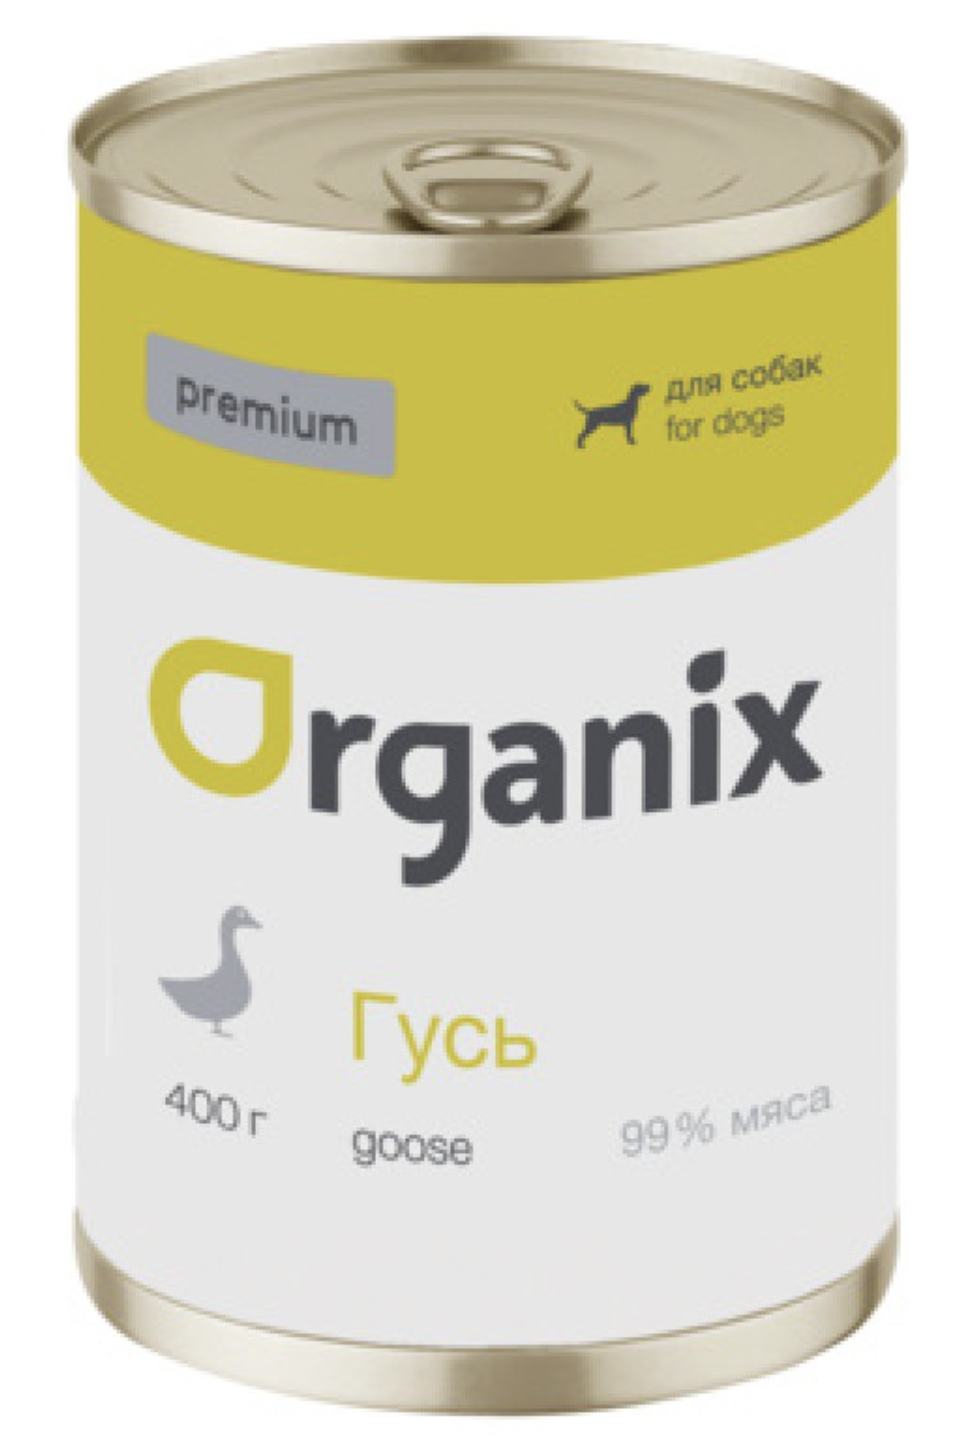 Organix - консервы для собак с гусем беззерновые 400 гр.